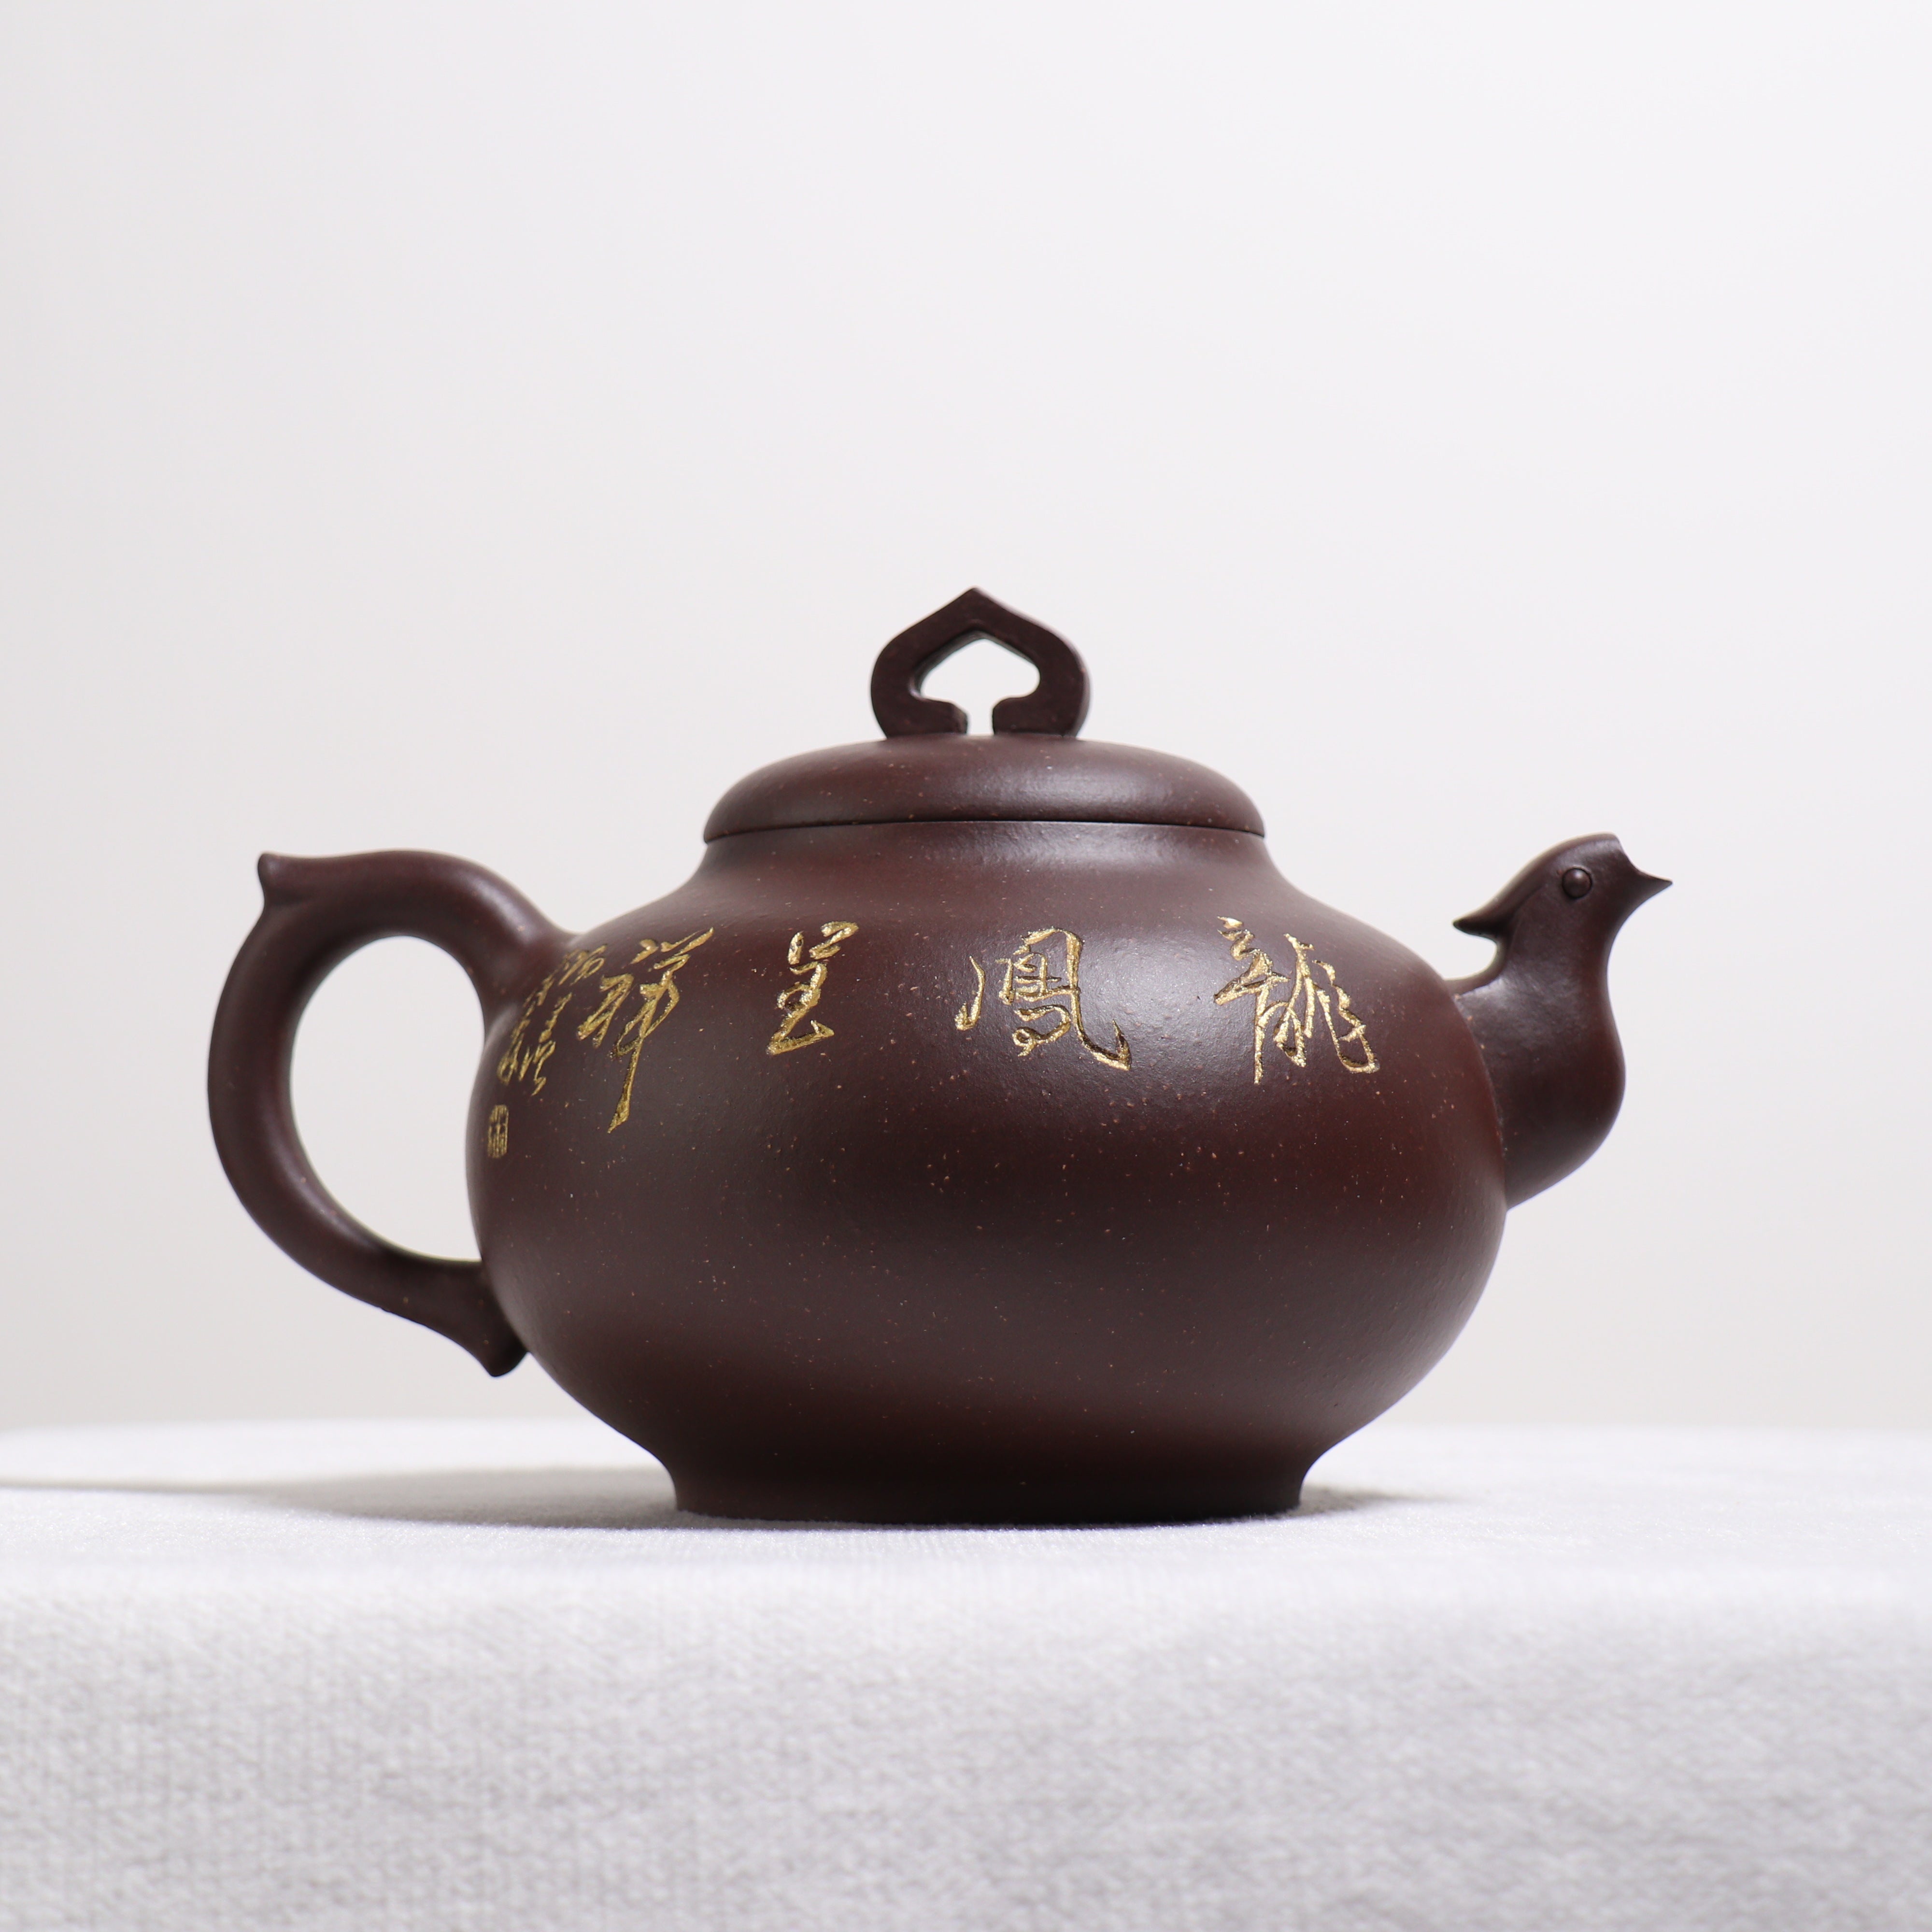 全日本送料無料 「龍鳳呈祥」 急須 茶道具 旧蔵 東洋彫刻